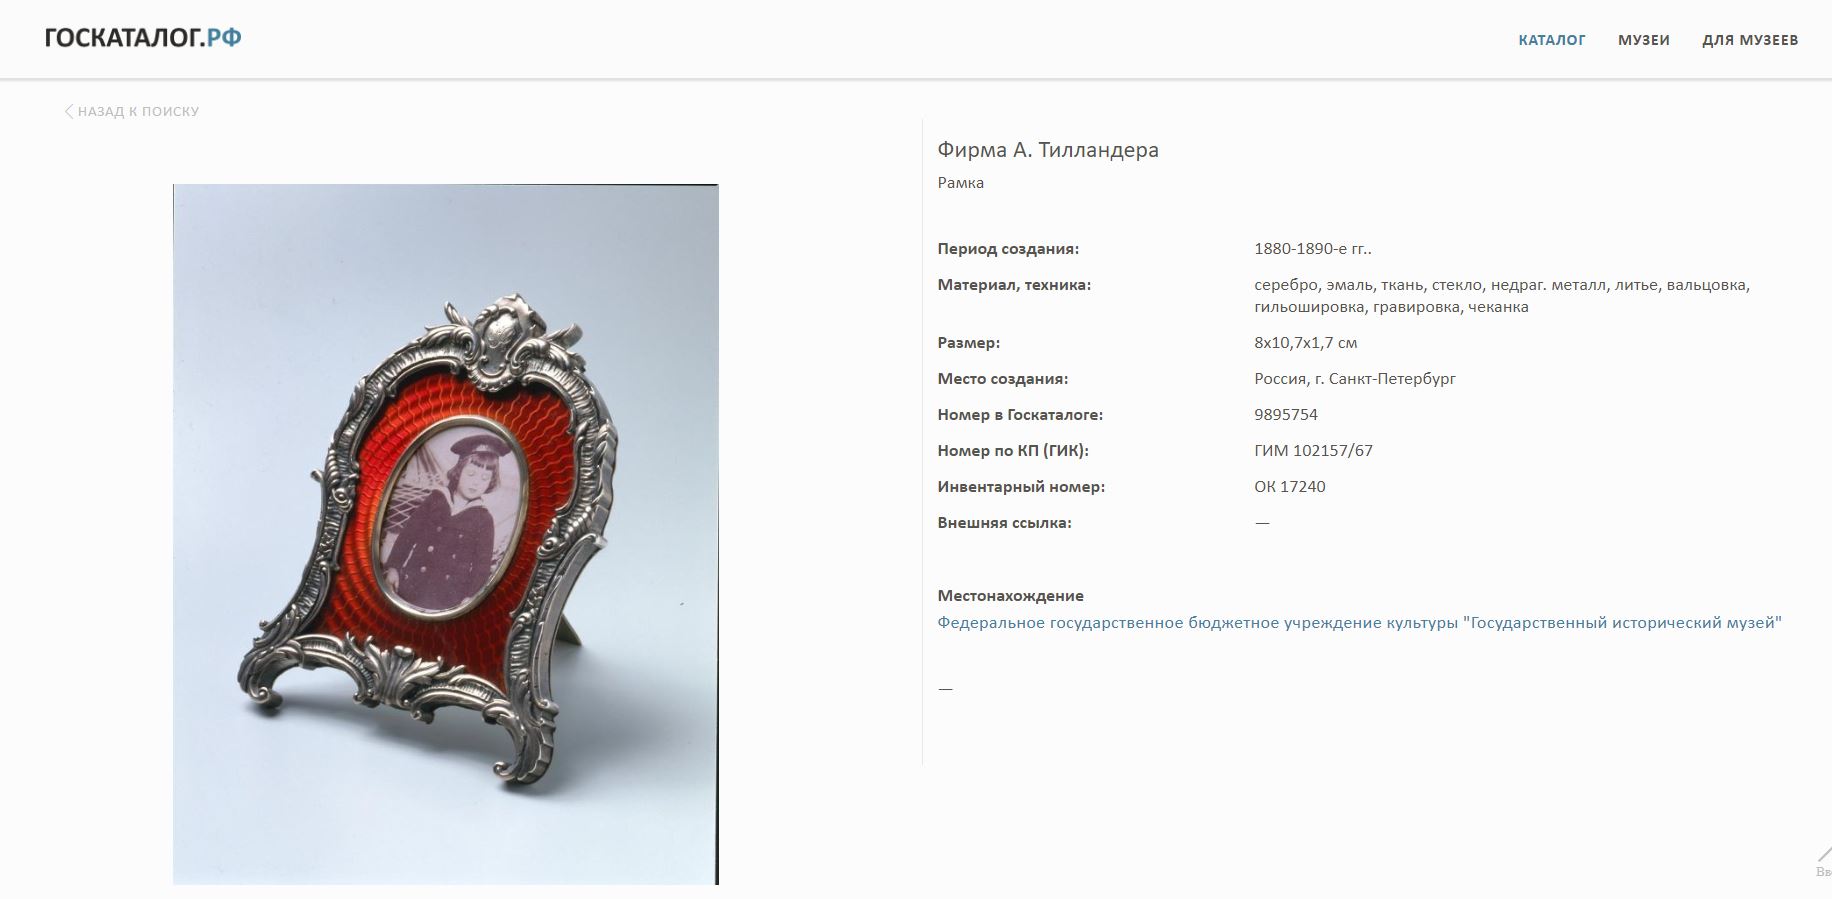 (Тилландер) Рама для фото с гильошированной эмалью и золотом. <br>Россия, Санкт-Петербург, фирма ювелира Тилландера Александра, 1889-1908-е годы.